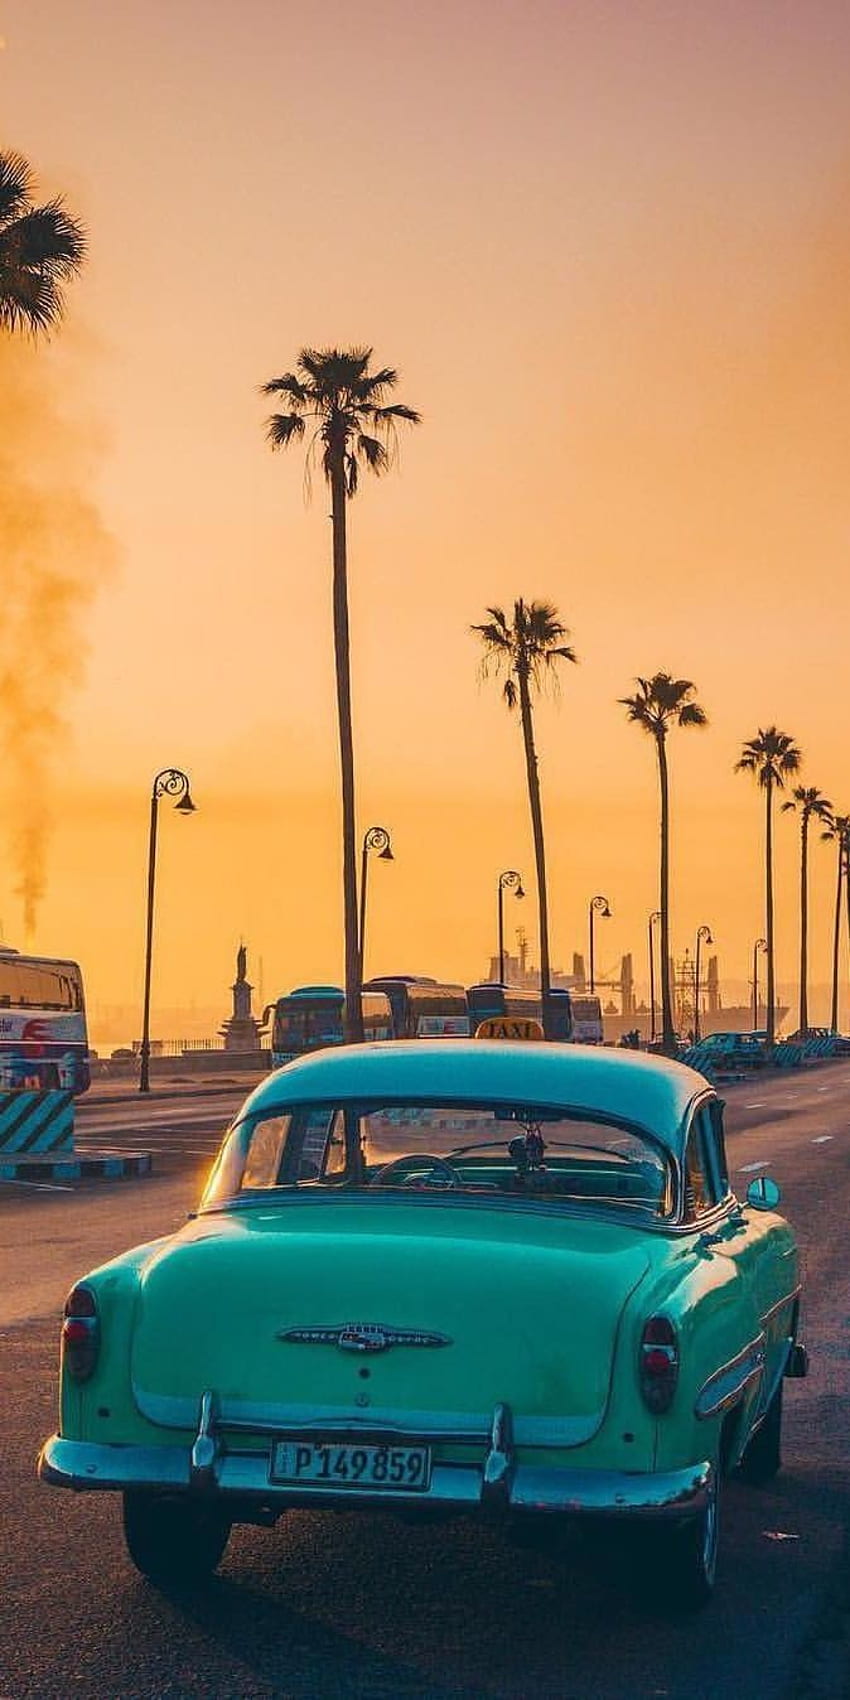 California luôn là tiêu điểm được yêu thích của những ai yêu thích phong cách retro và vintage. Hãy cùng khám phá bộ sưu tập ảnh Vintage Retro California để tận hưởng cảm giác thư thái và hoài niệm.